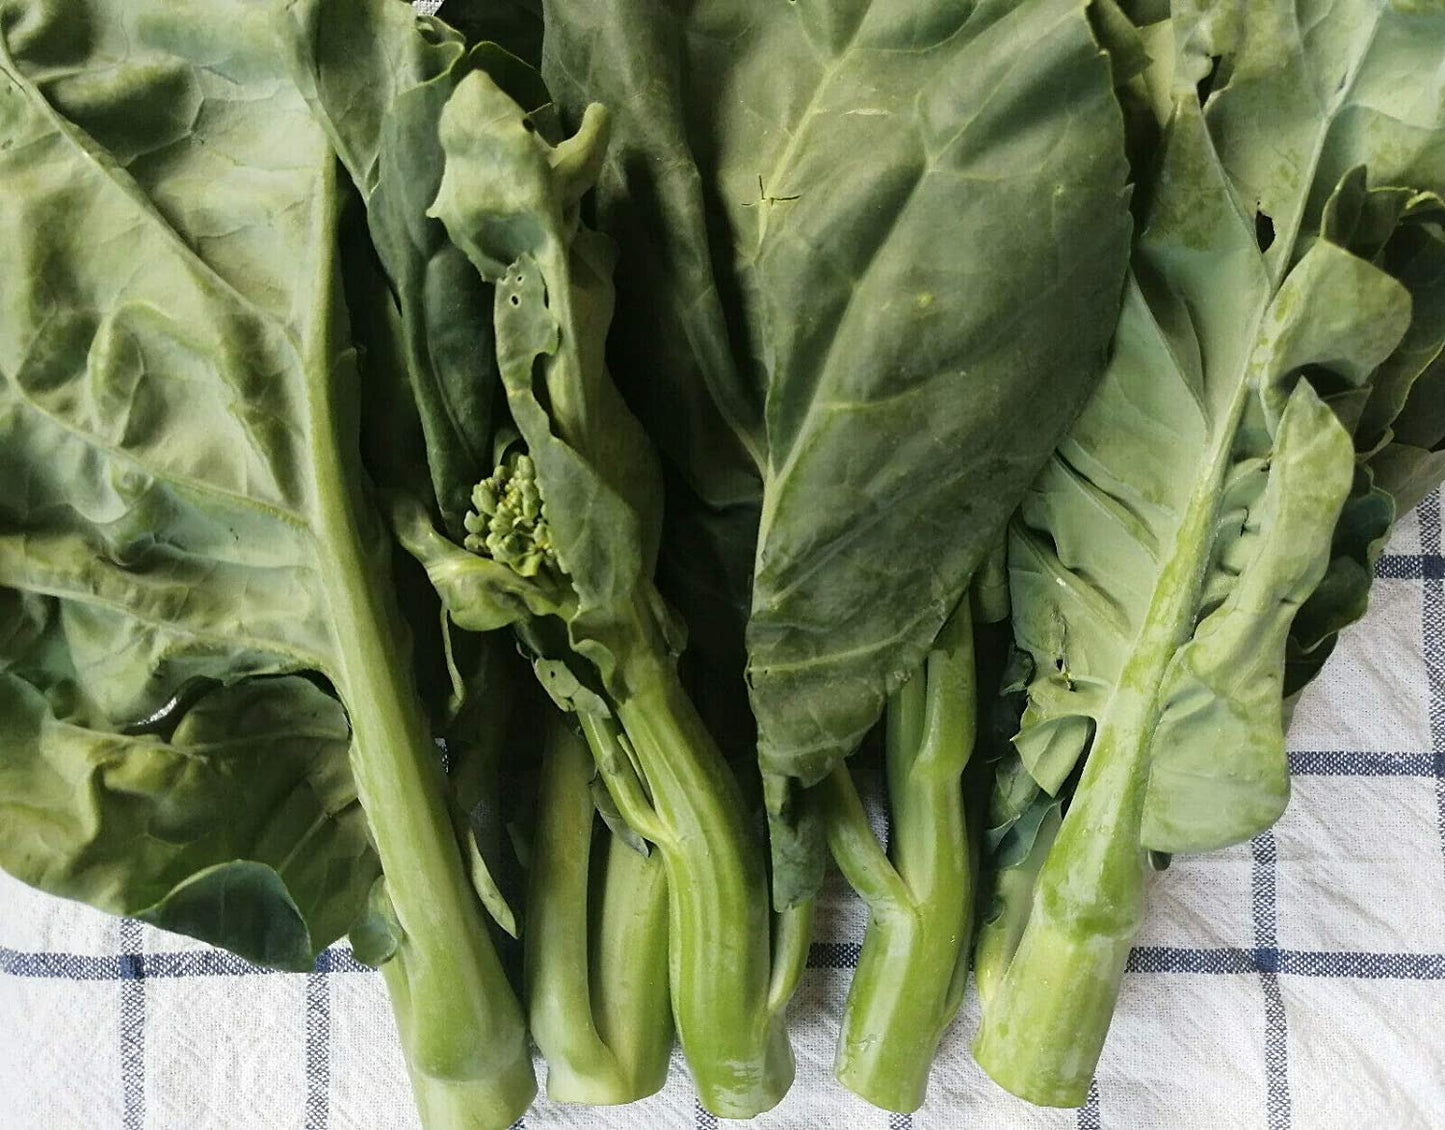 Hundredfold Kailaan Chinese Broccoli, Chinese Kale 200 Vegetable Seeds - Brassica oleracea GAI LAN or Kai LAN Non-GMO Asian Greens